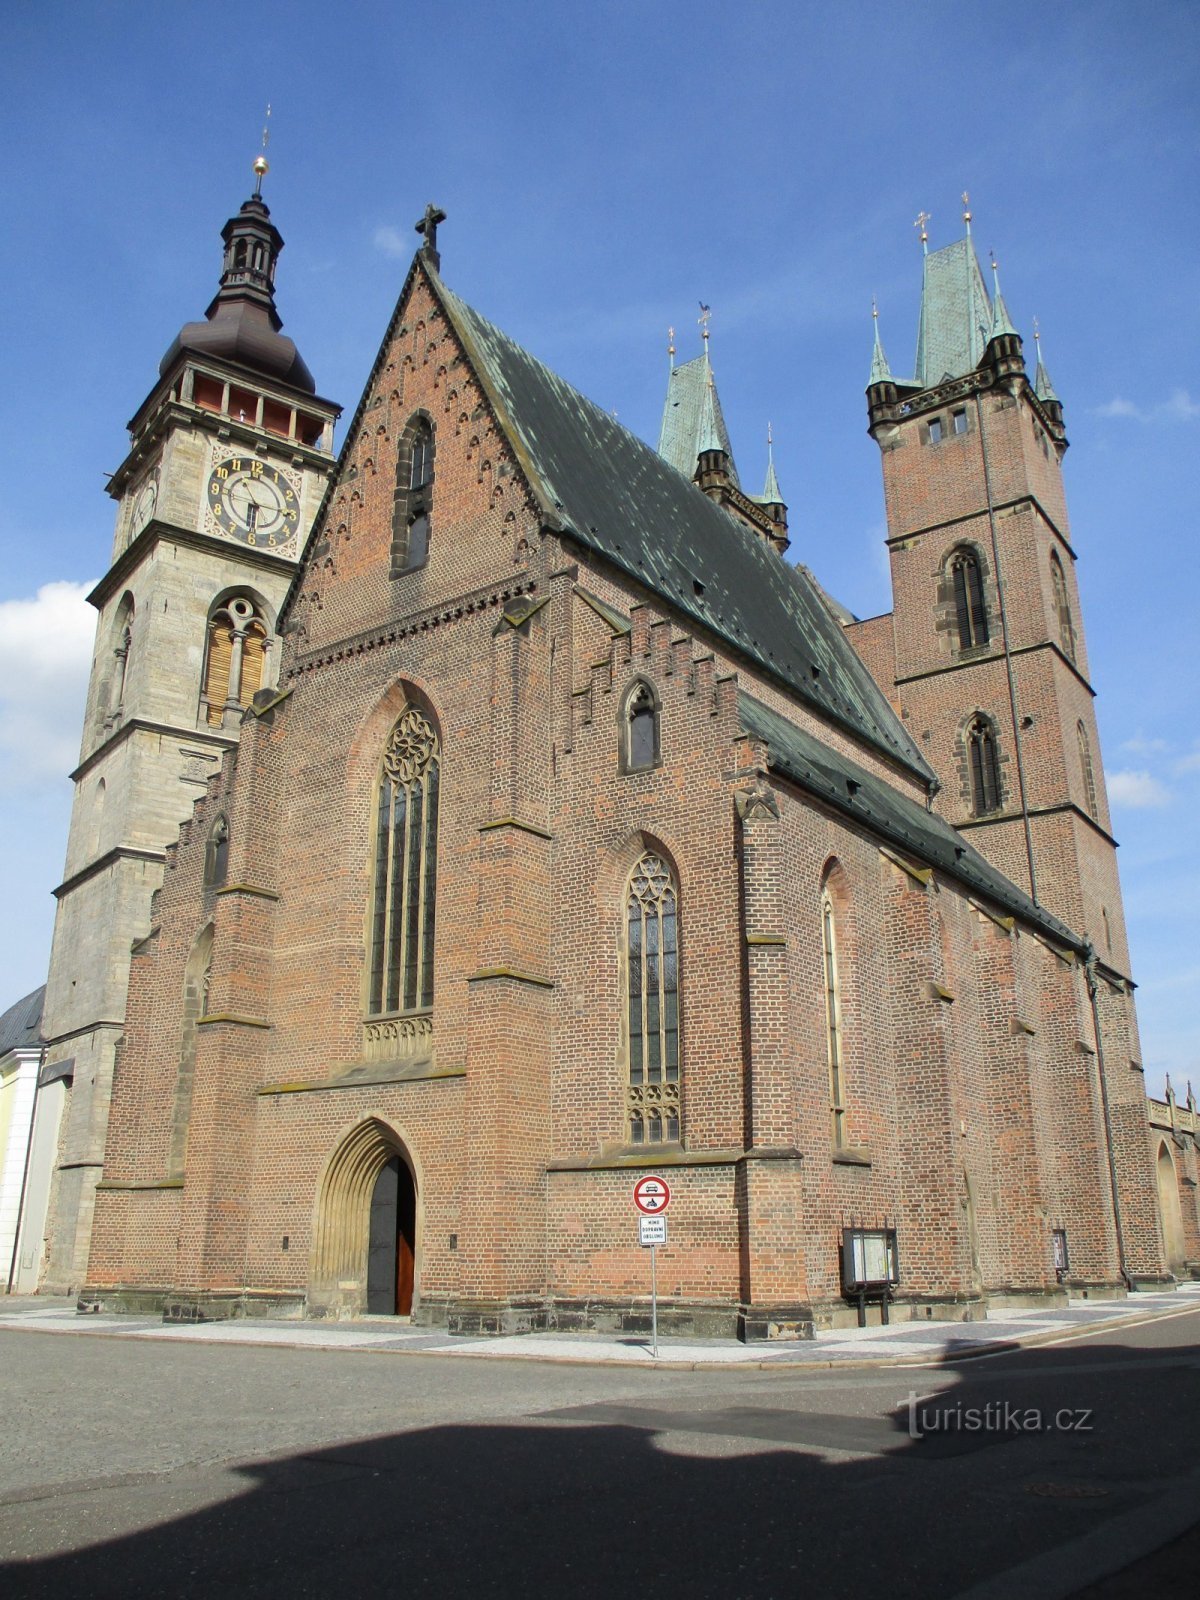 De witte toren en de kathedraal van St. Geest (Hradec Králové, 15.9.2019/XNUMX/XNUMX)